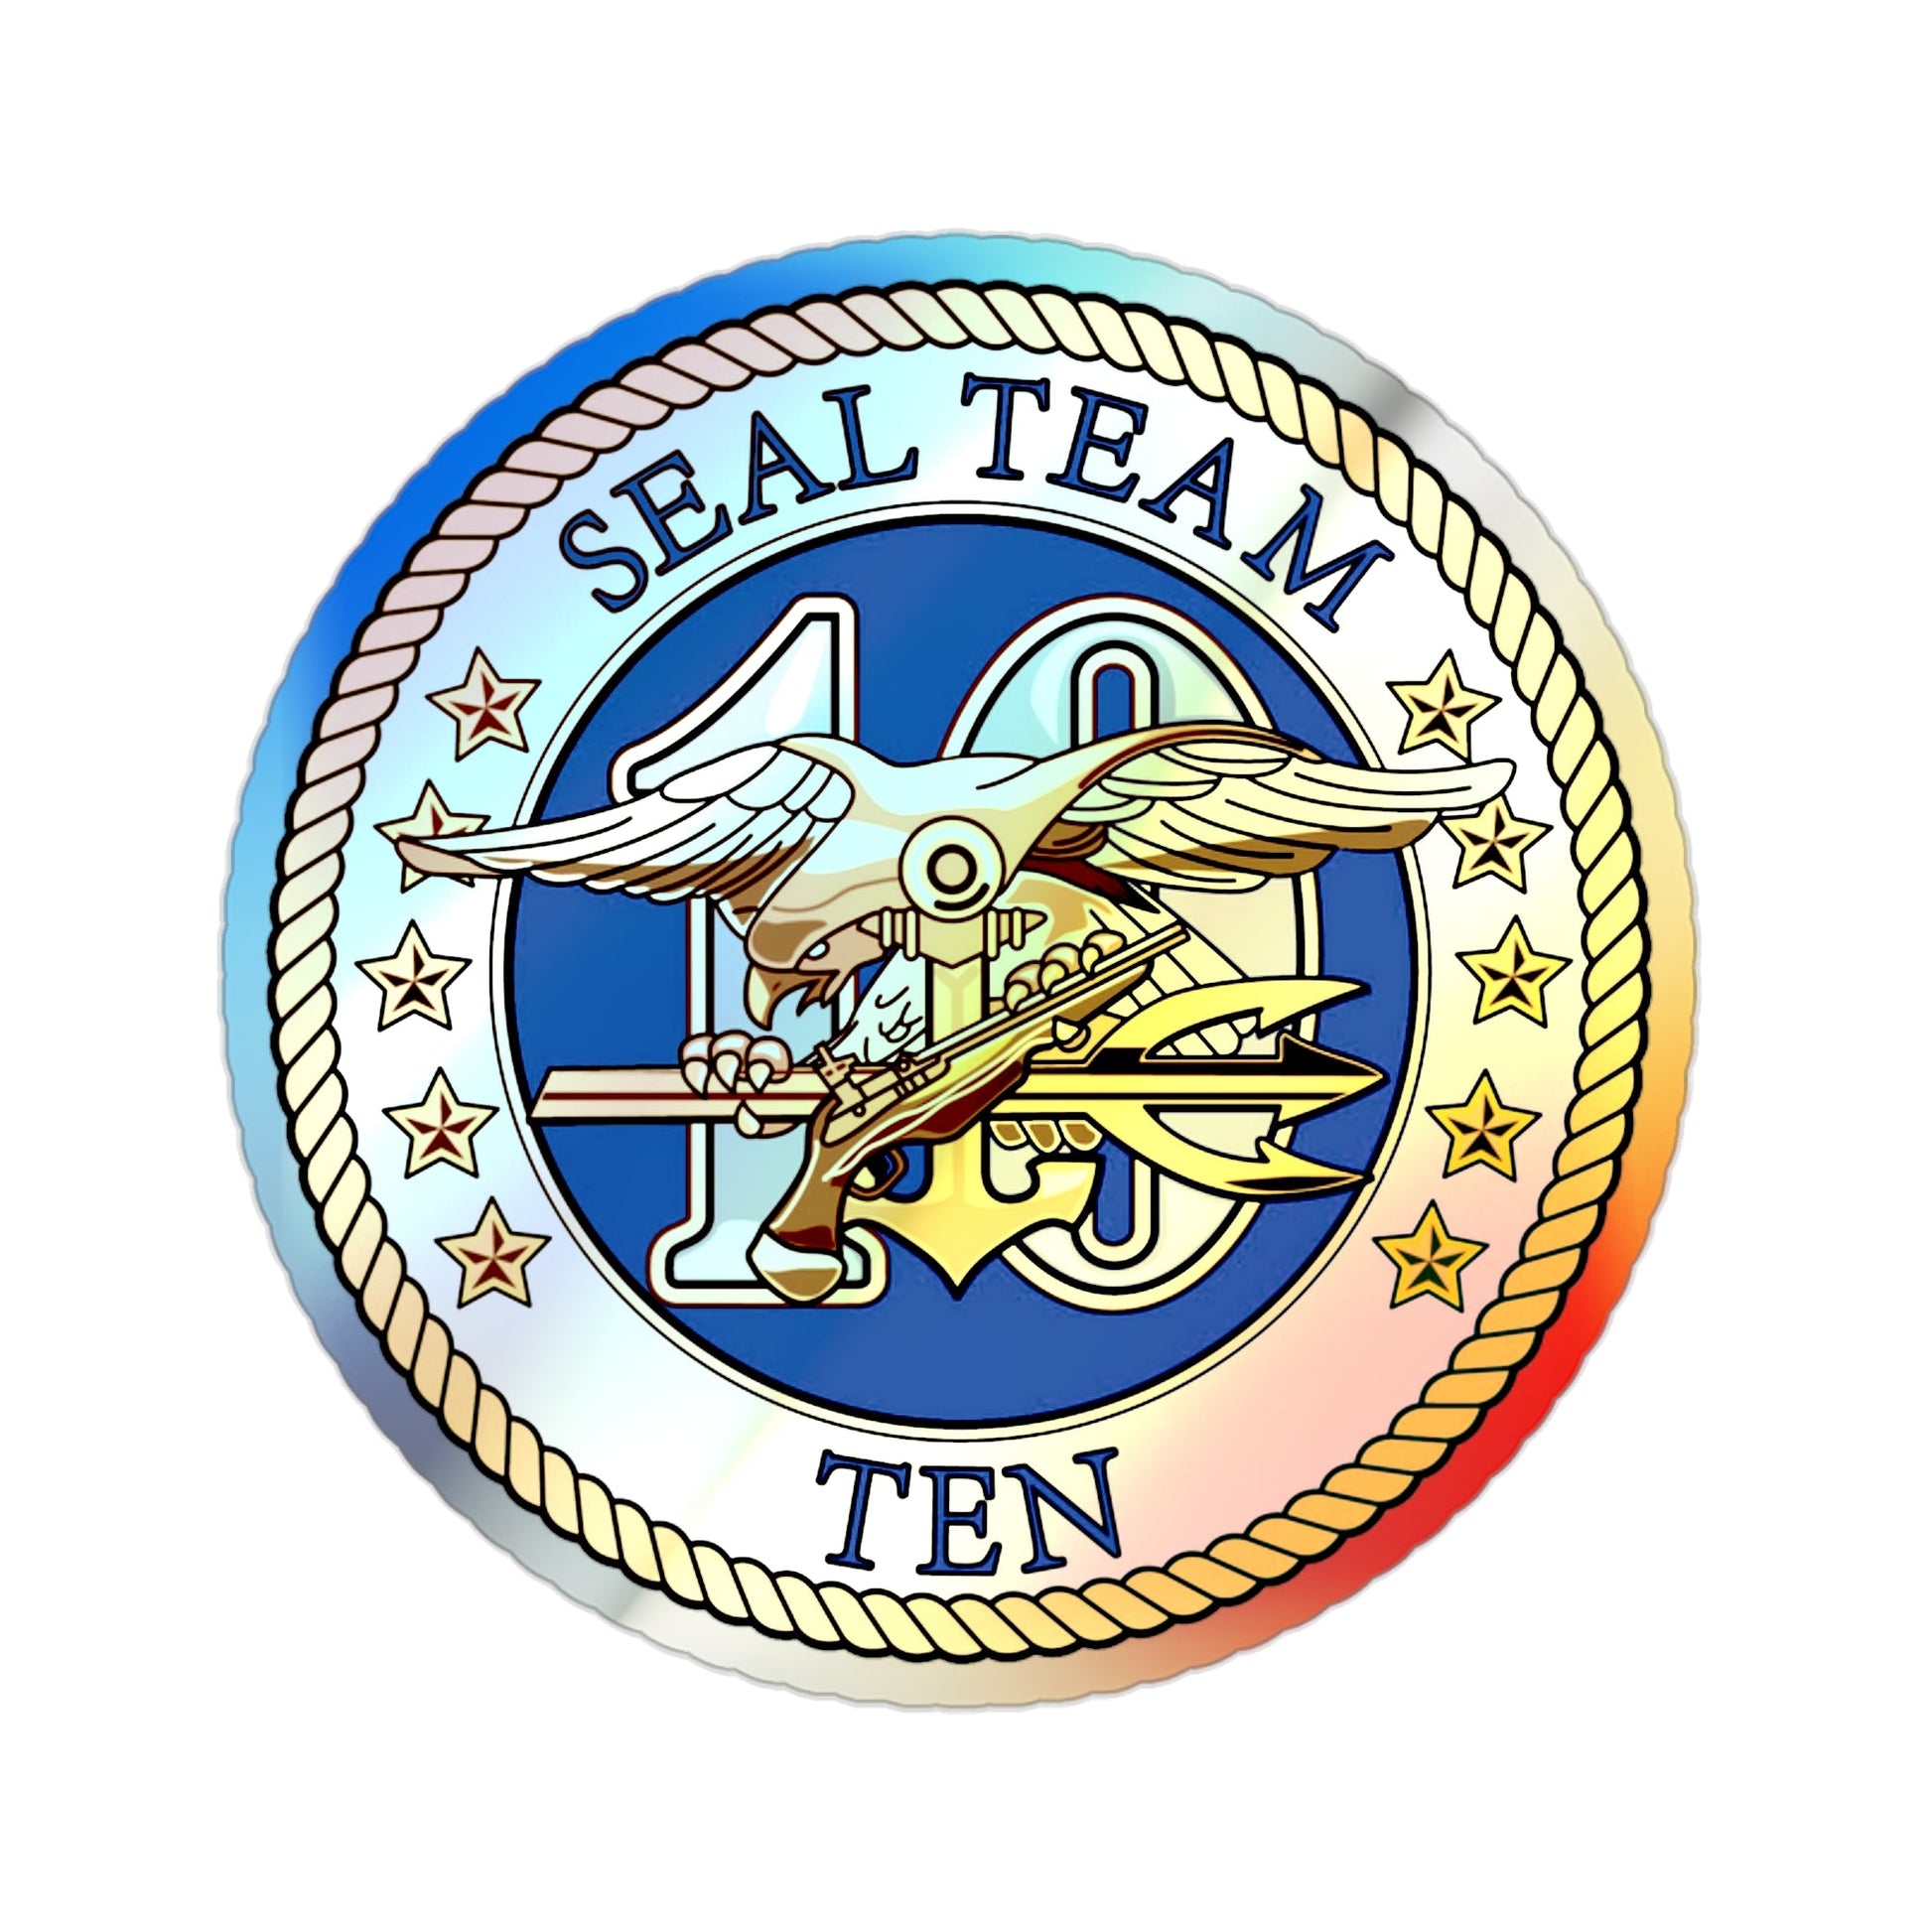 Seal Team 10 (U.S. Navy) Holographic STICKER Die-Cut Vinyl Decal-2 Inch-The Sticker Space